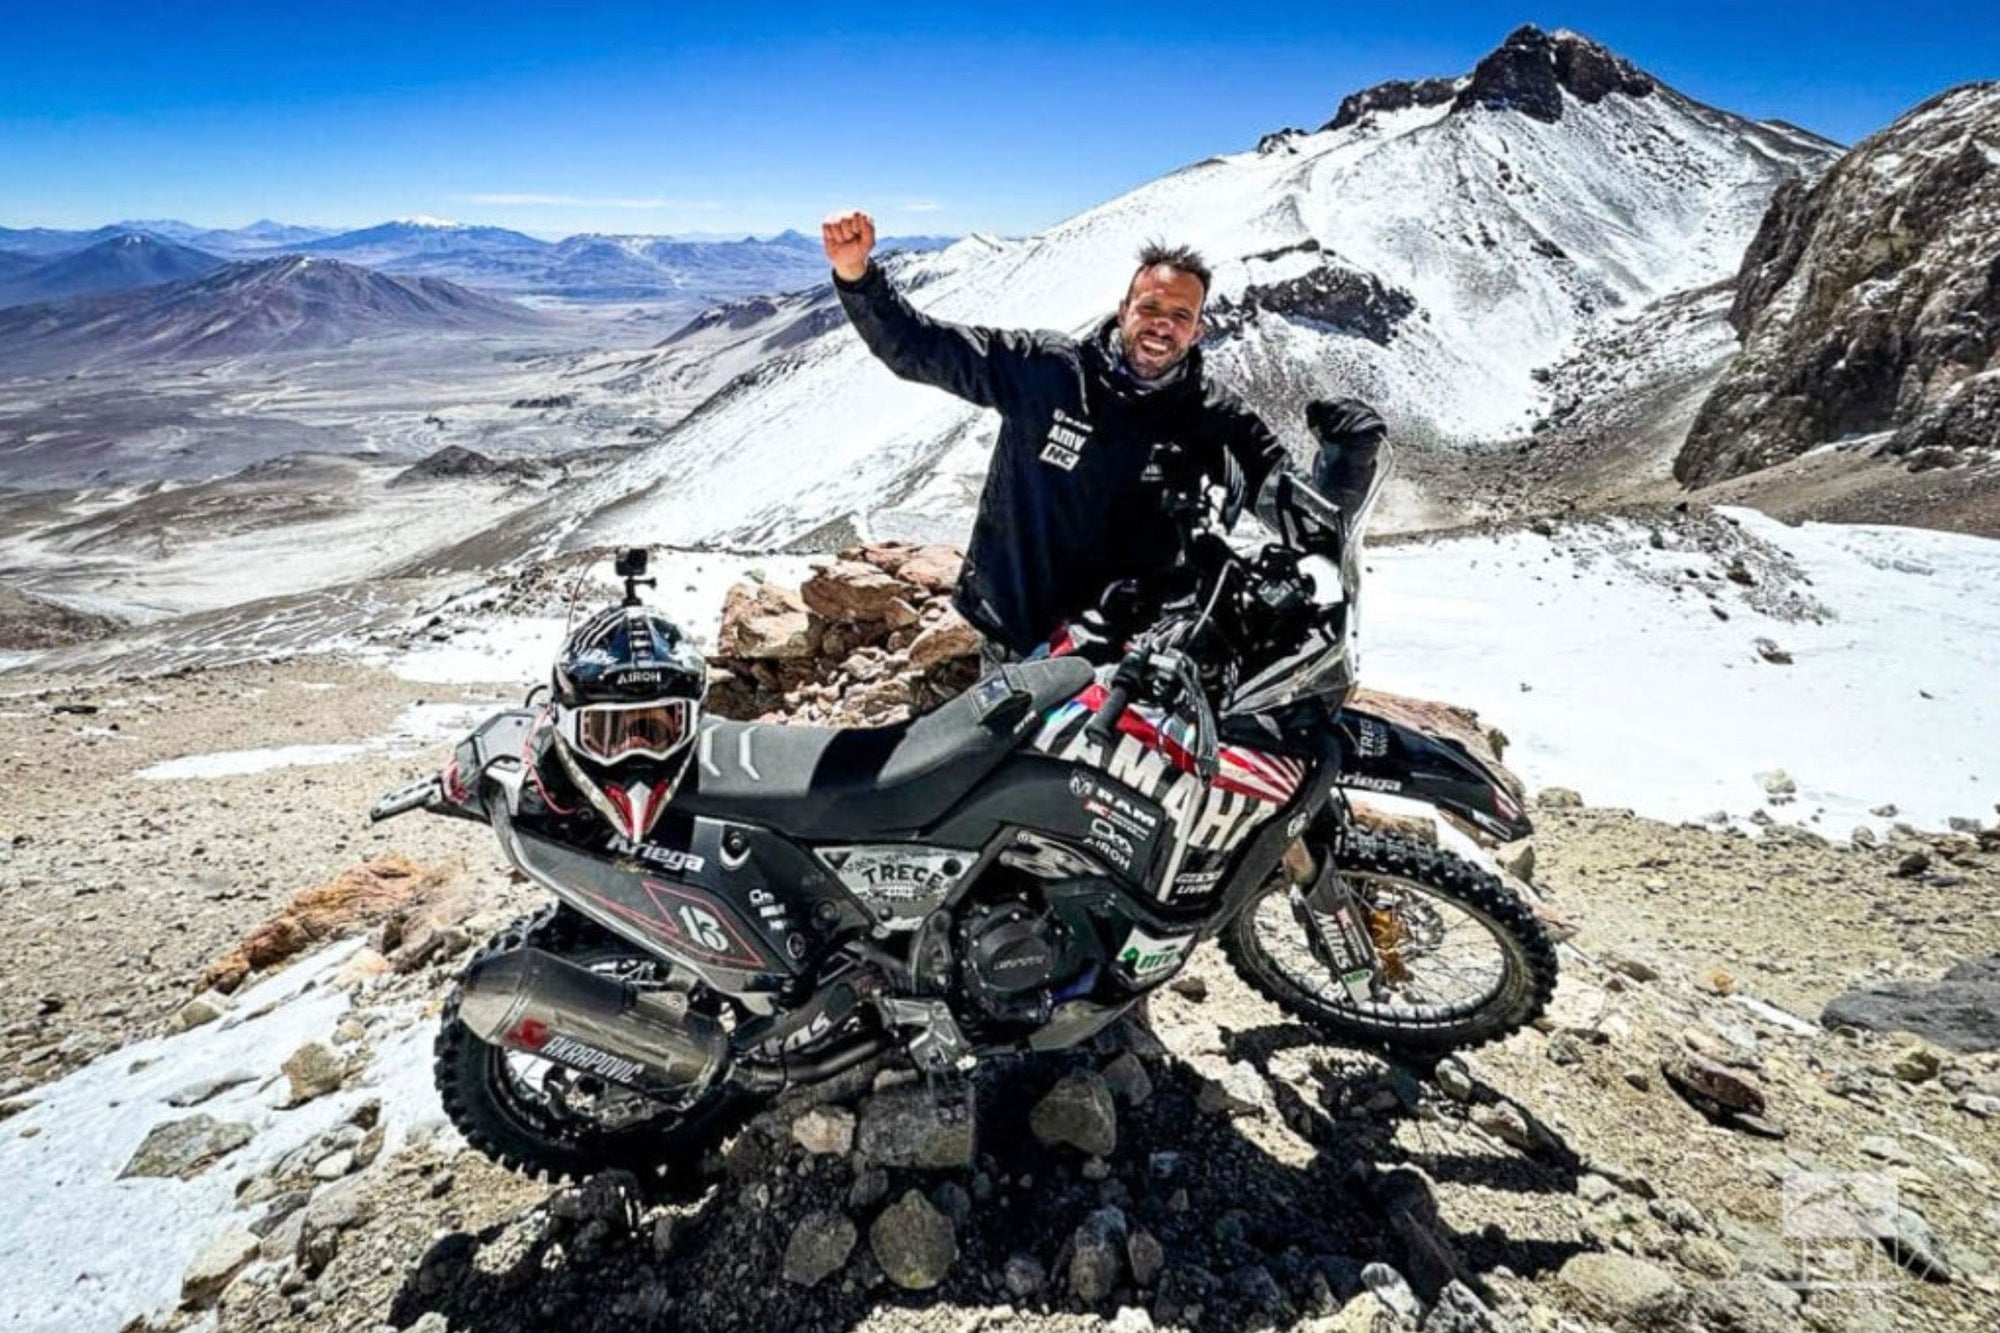 Pol Tarrés sets altitude record